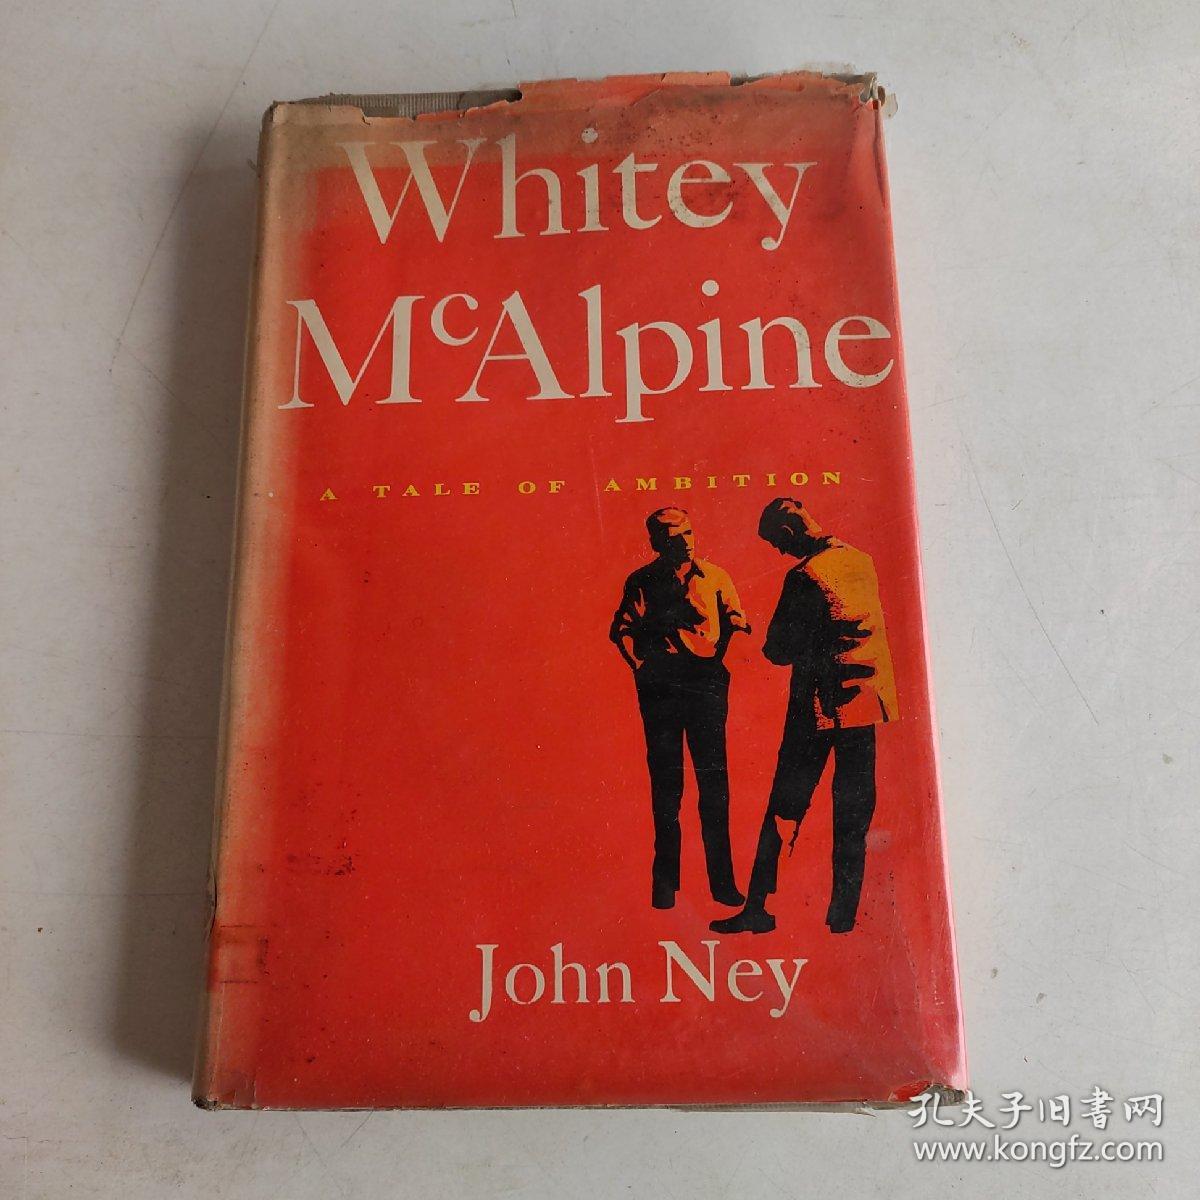 Whitey McAlpine